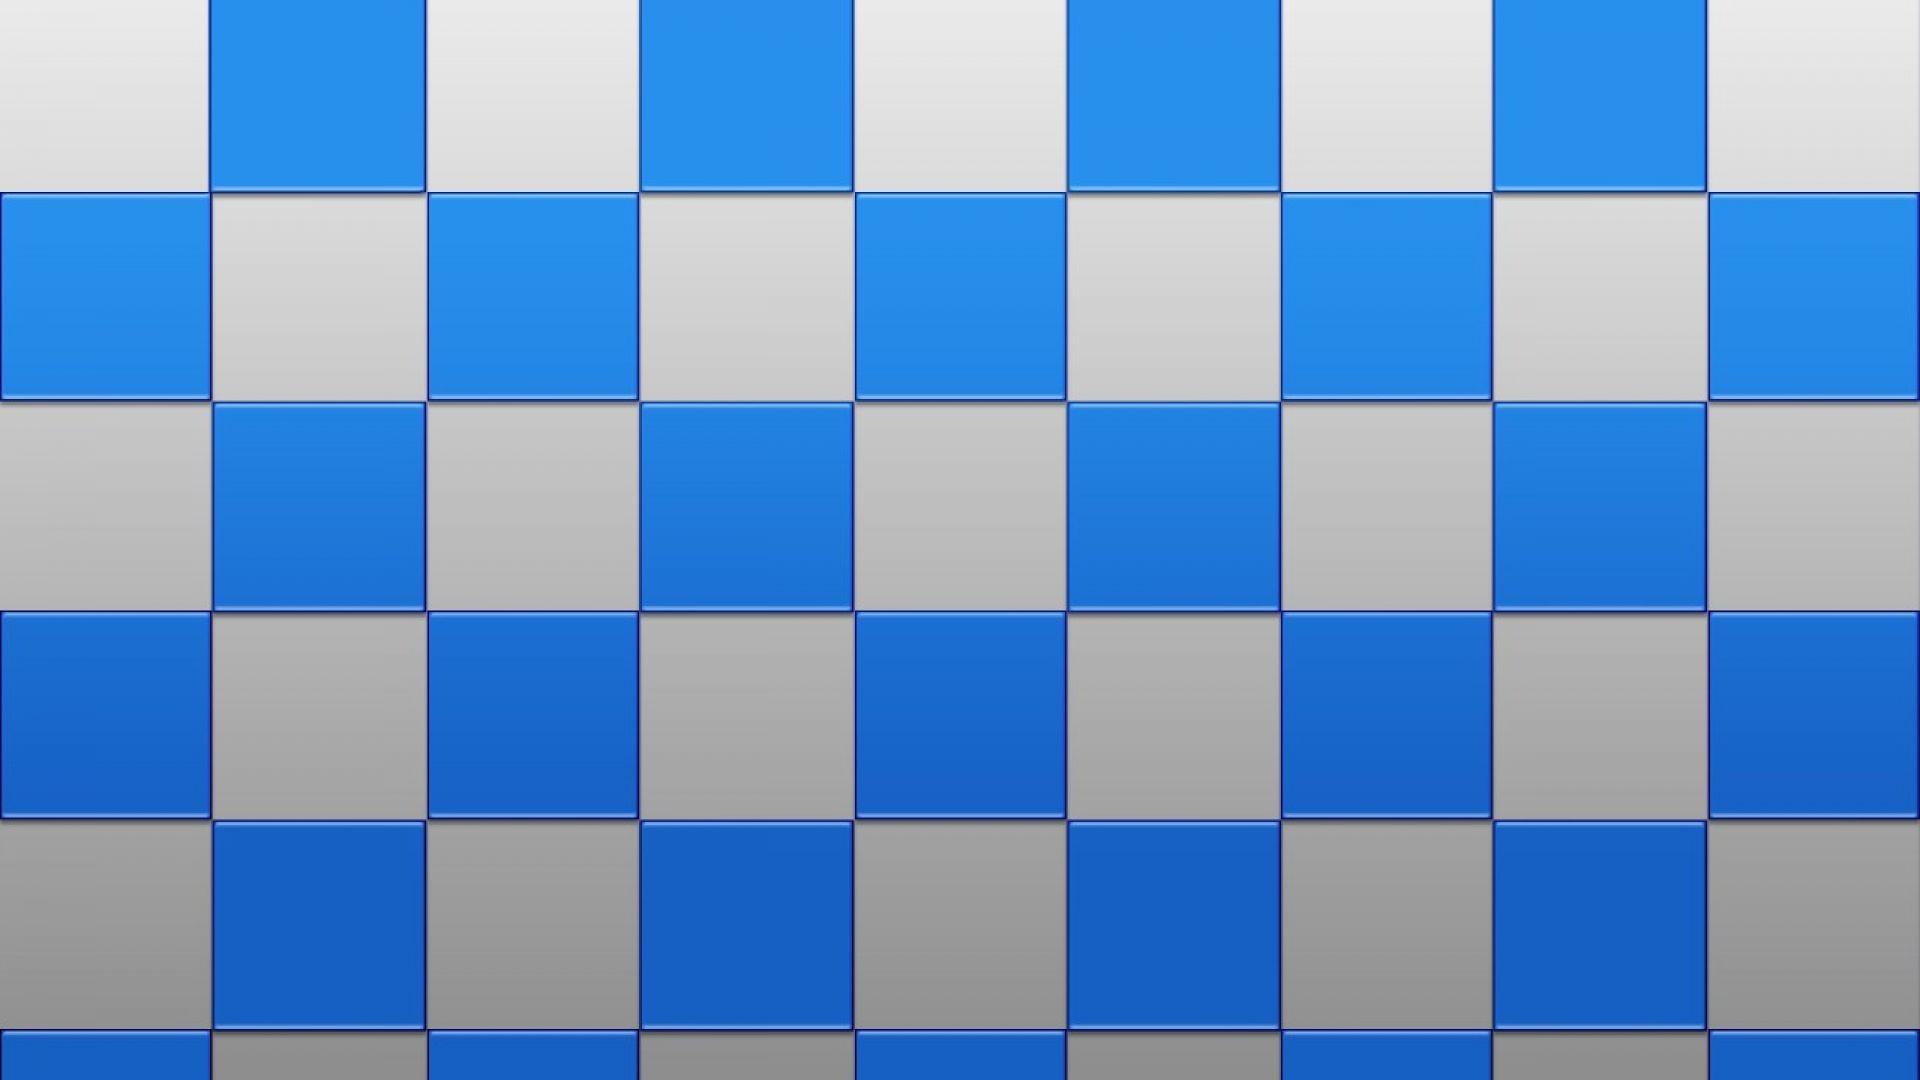 Amazing Square Wallpaper Squares HD Wallpaper 1920x1080 pixels